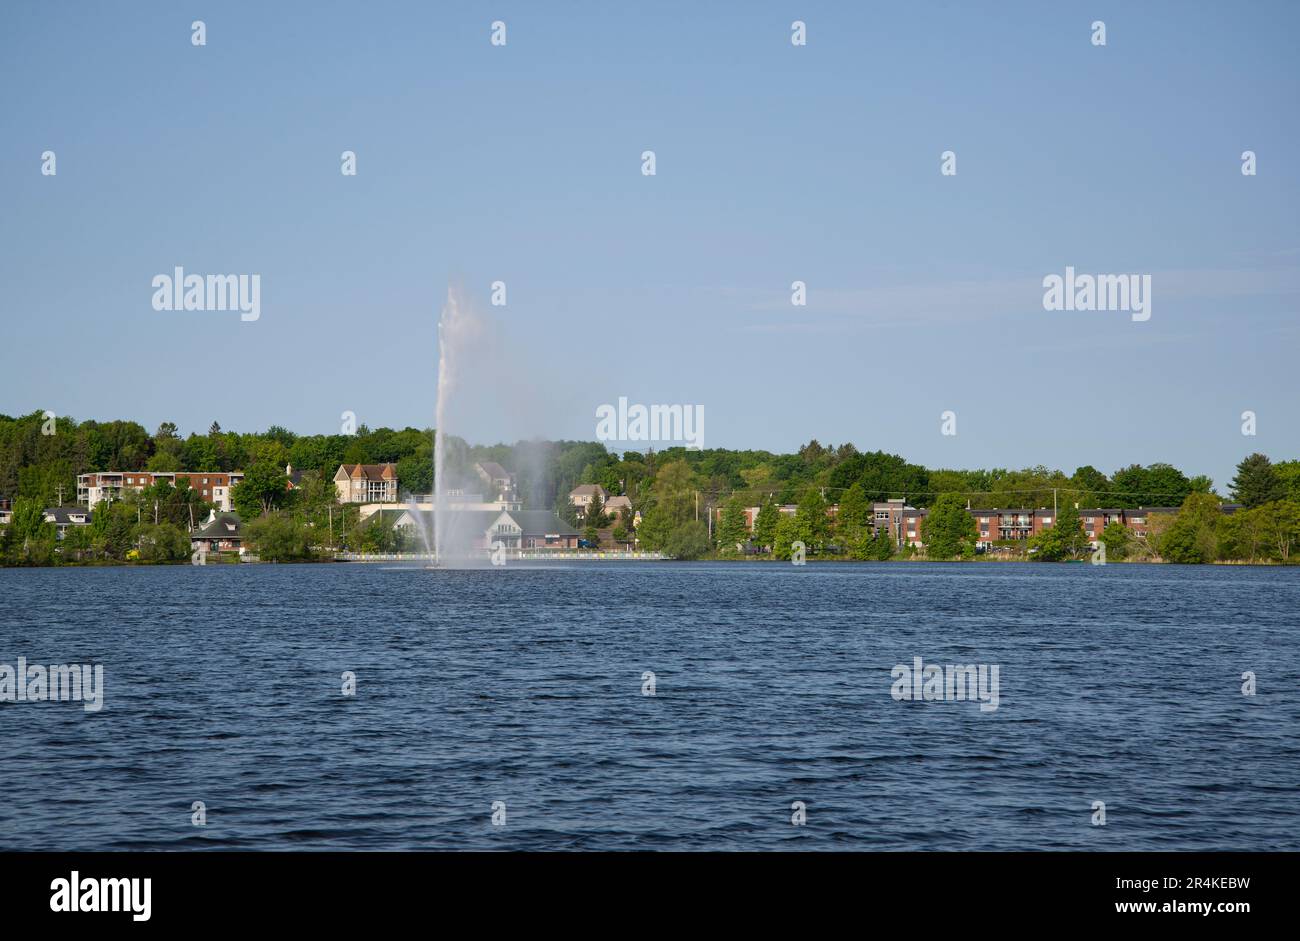 Fontaine sur le lac Boivin Granby Québec Canada Stock Photo